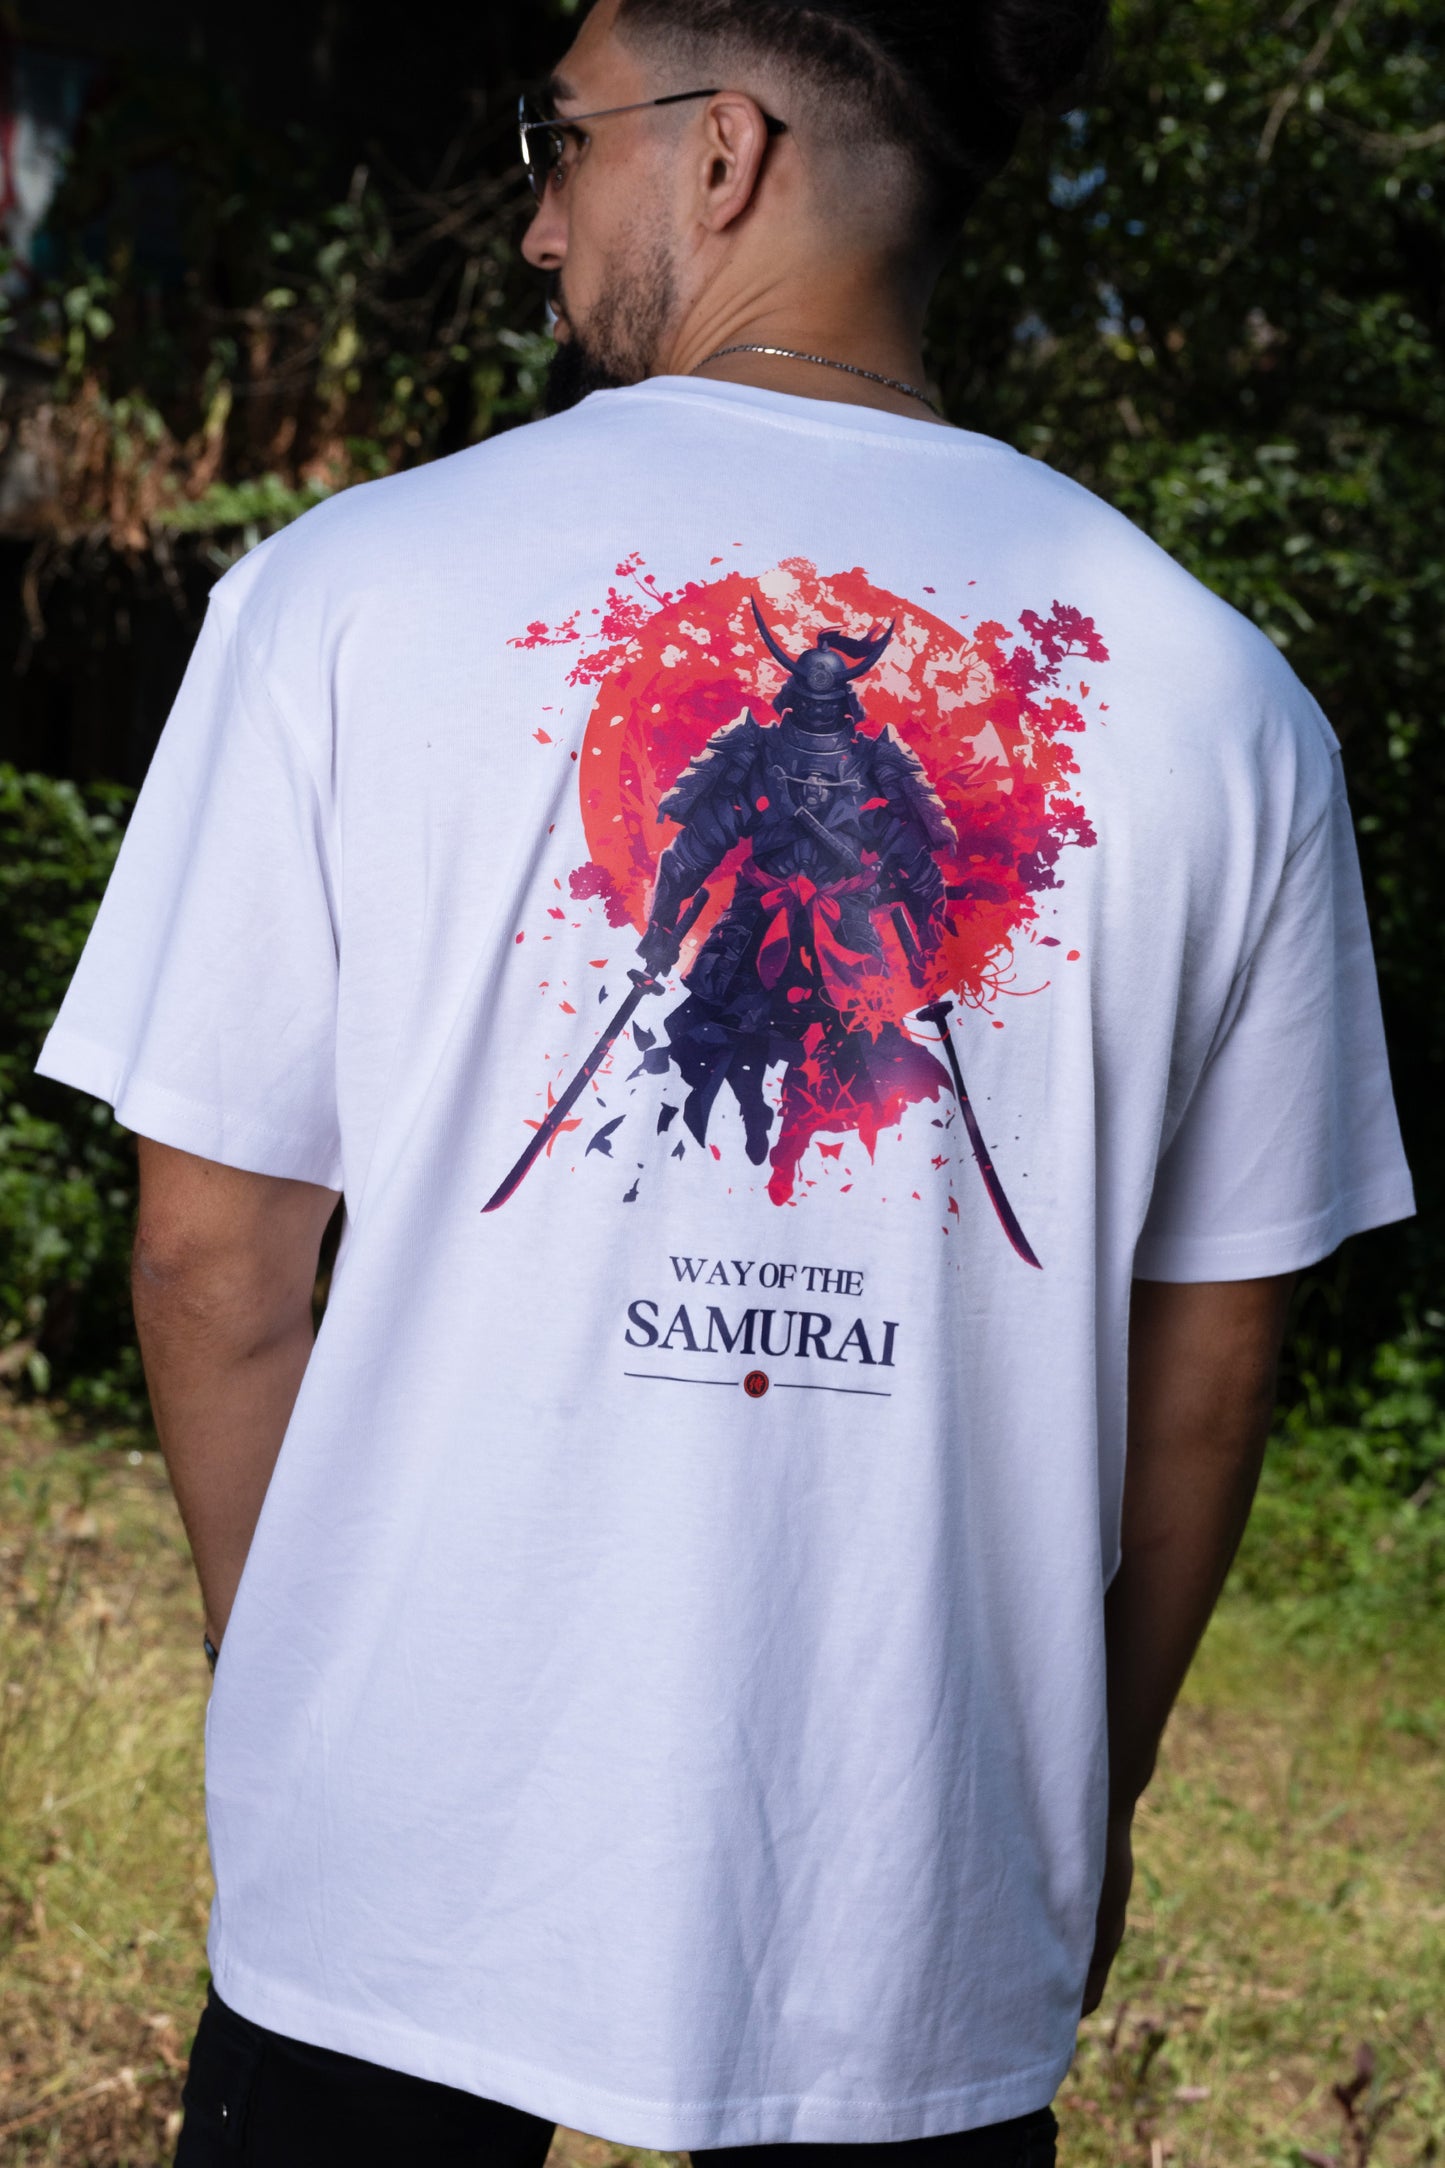 T-SHIRT "WAY OF THE SAMURAI"